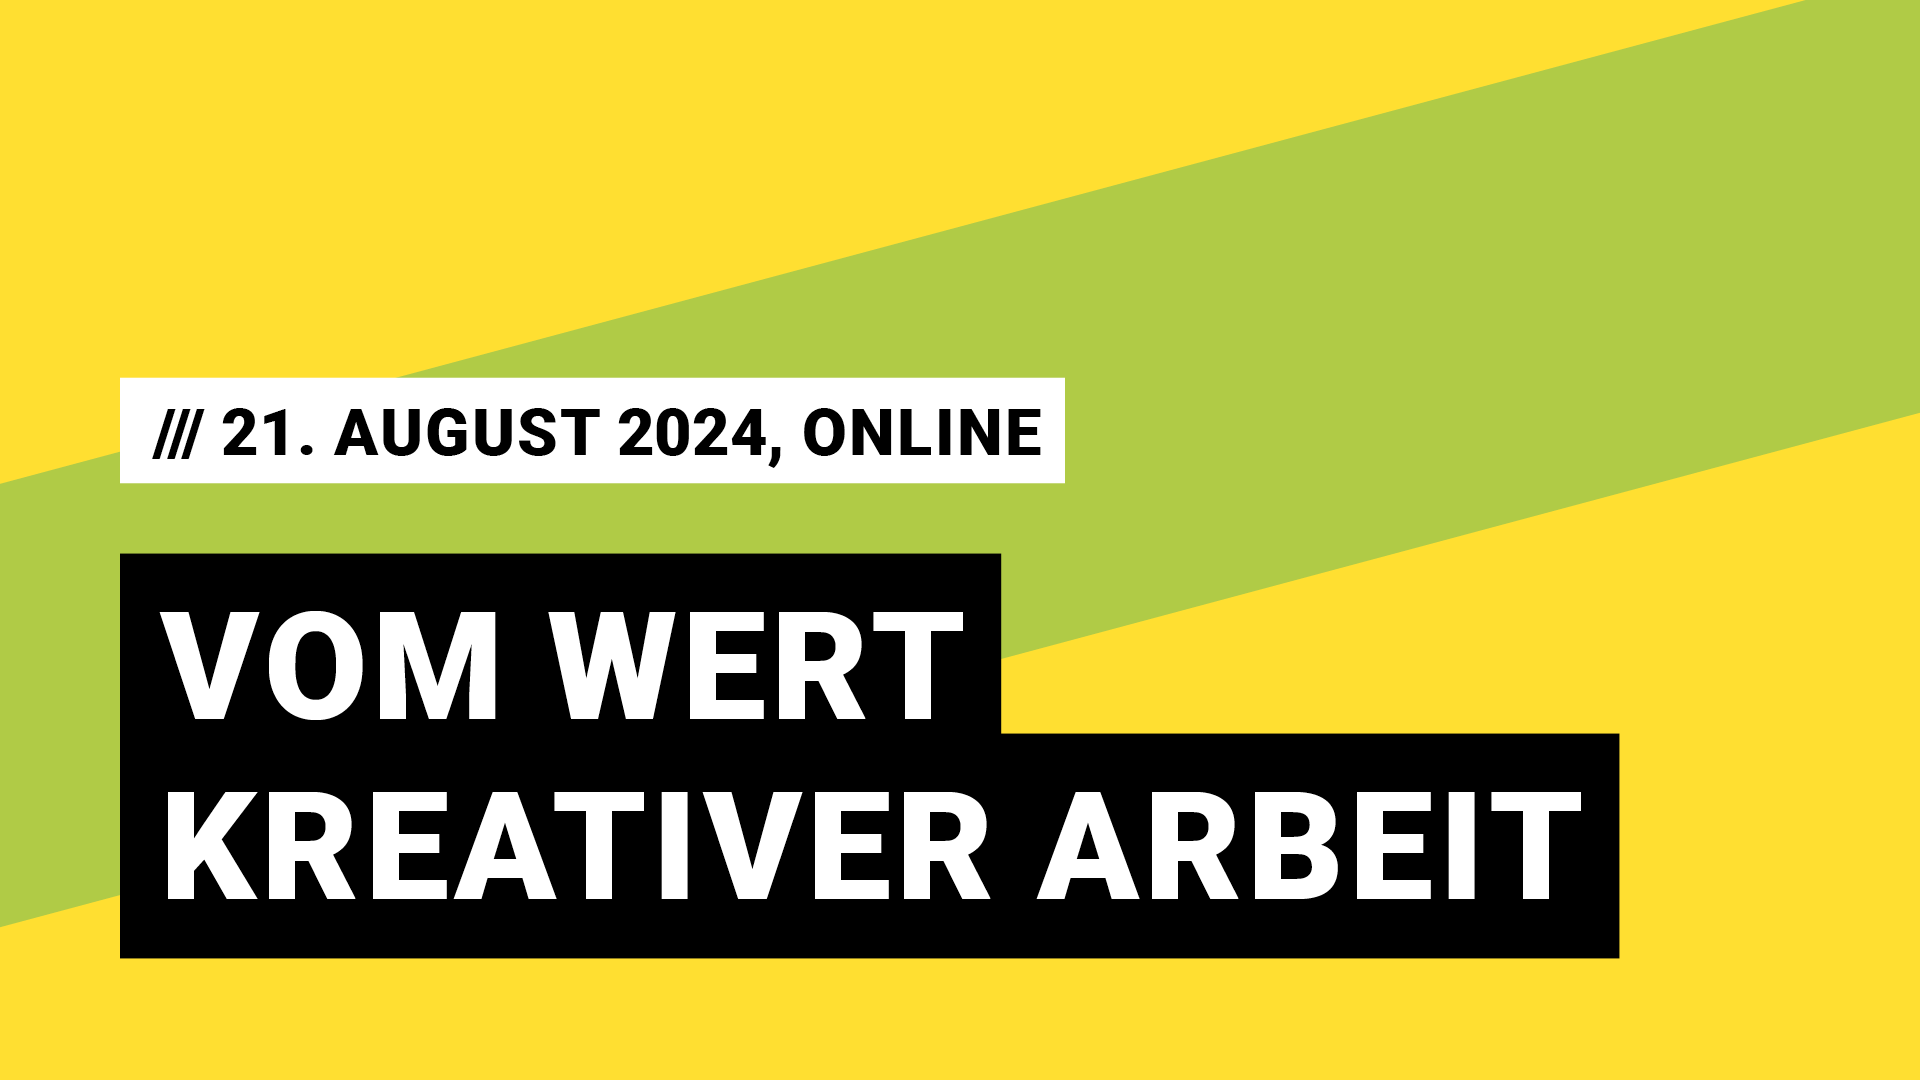 Titelbild Veranstaltung Vom Wert kreativer Arbeit mit Datum 21. August 2024, Online